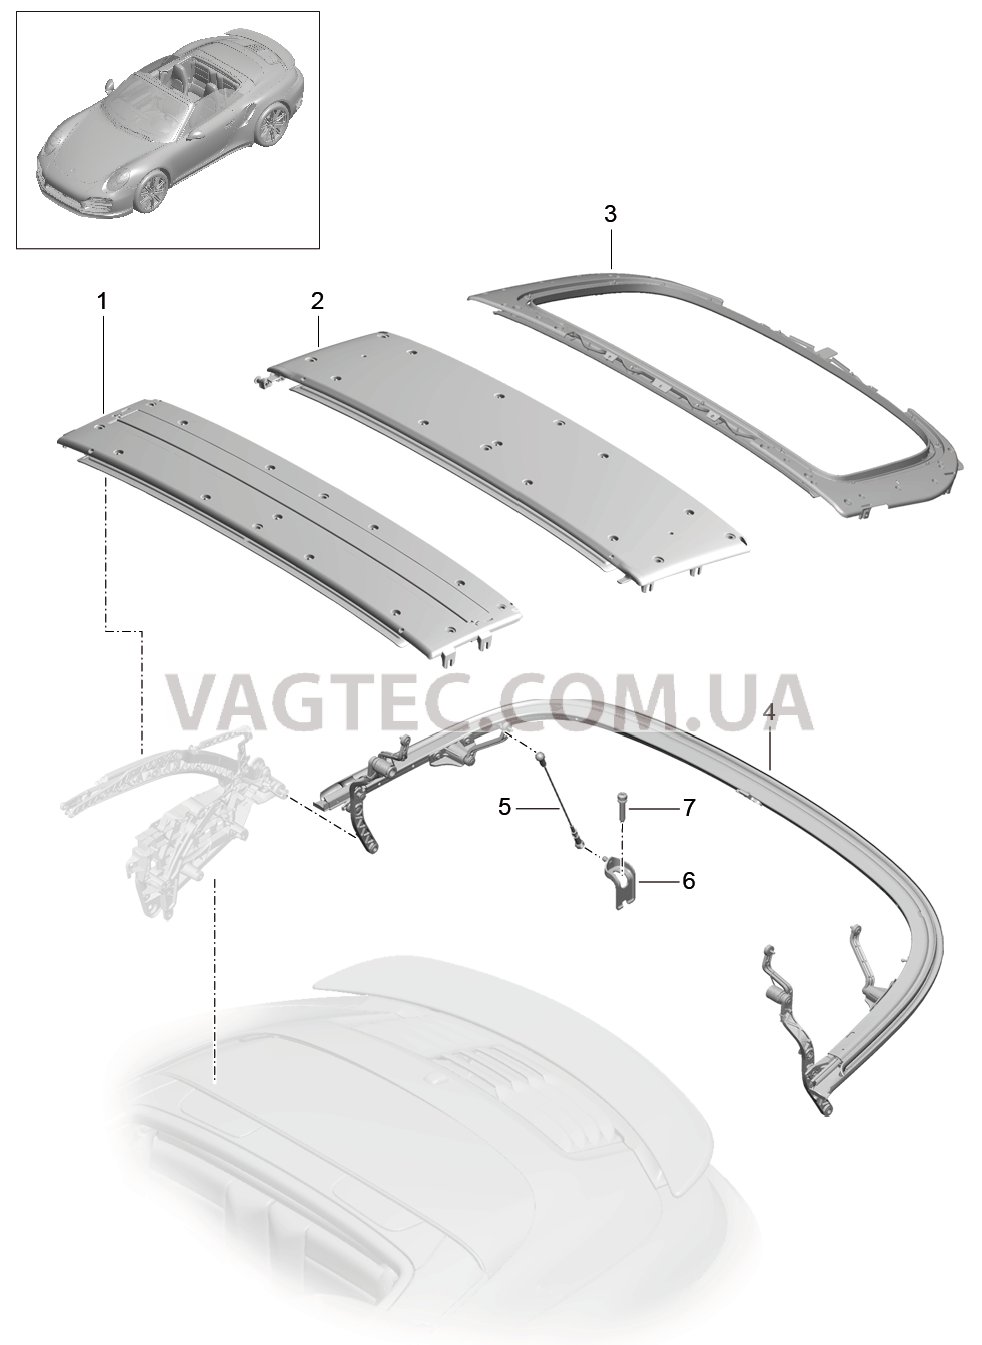 811-020 Каркас складного верха, Отдельные детали, Дуга
						
						CABRIO для PORSCHE Porsche991Turbo 2014-2017USA